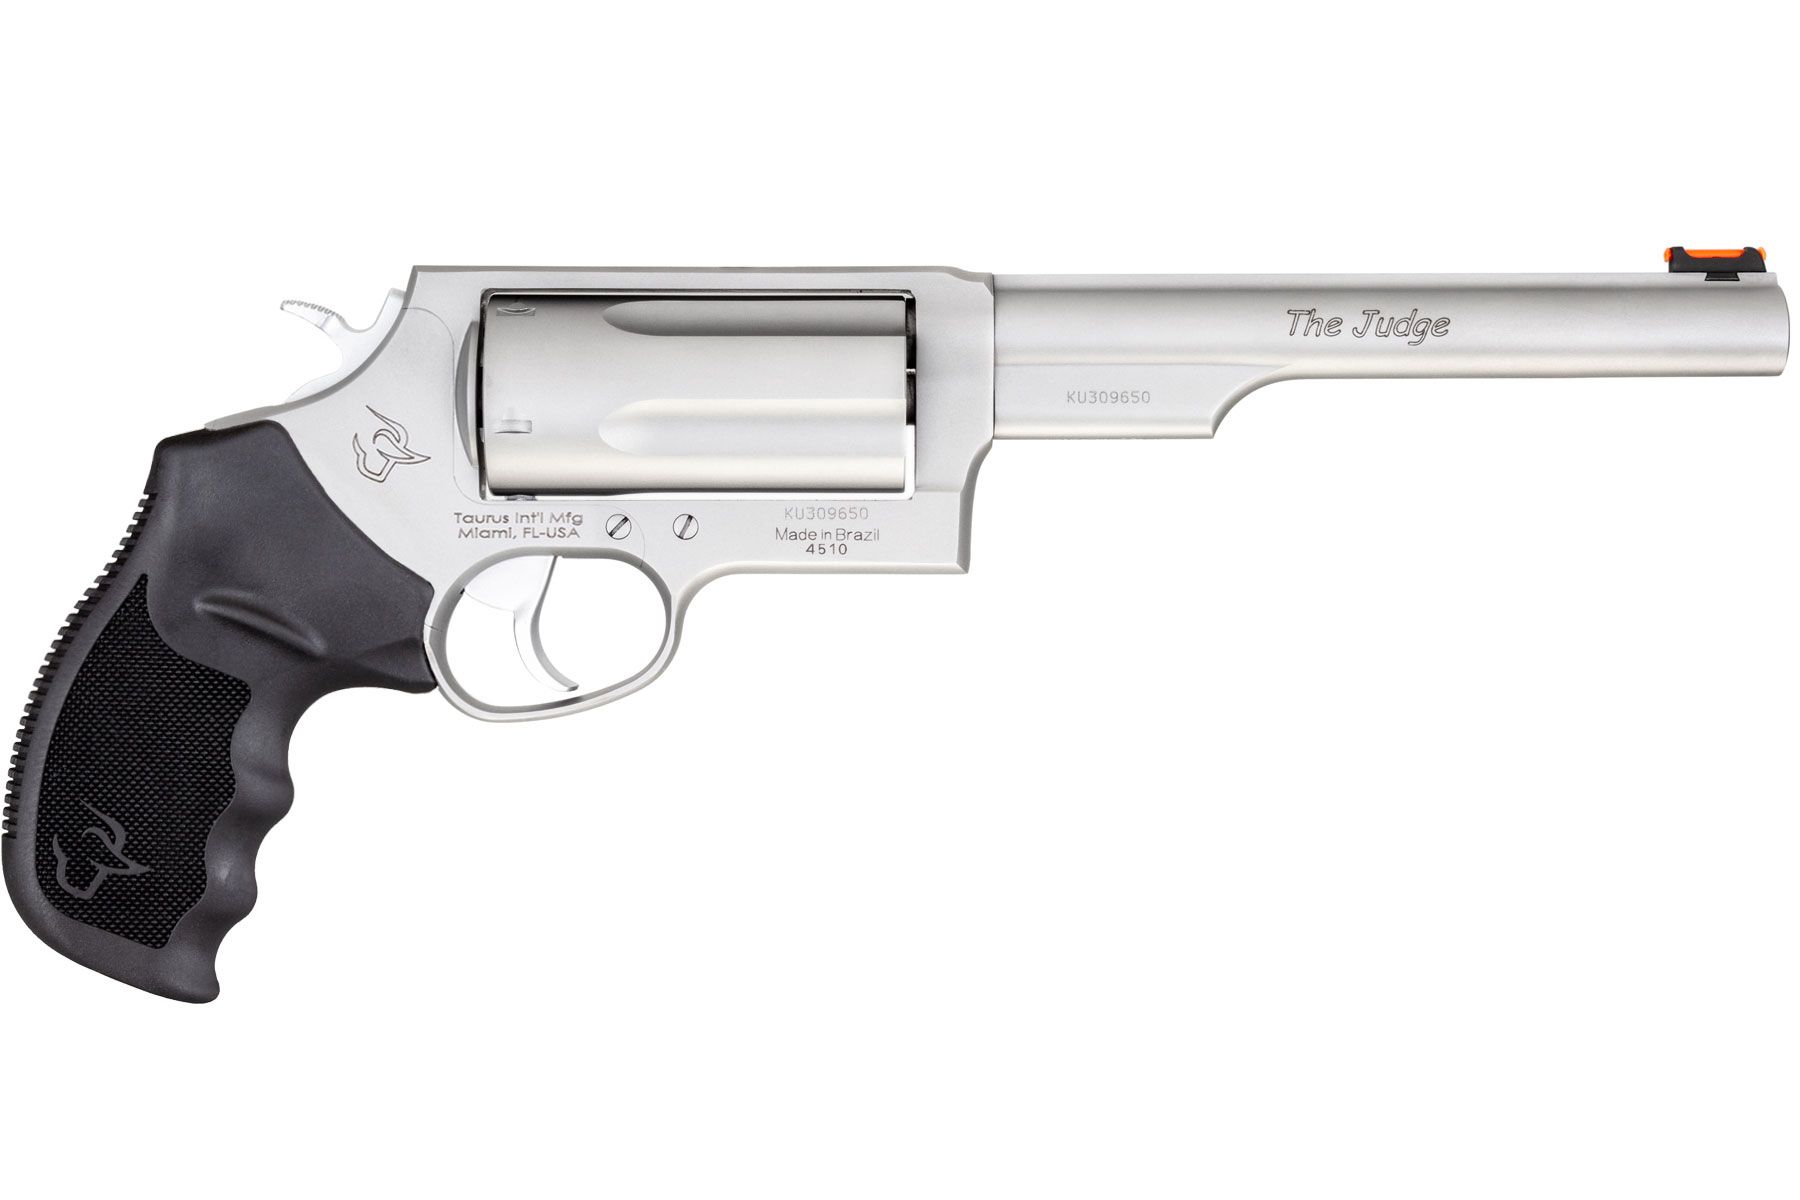 45 caliber revolver long barrel